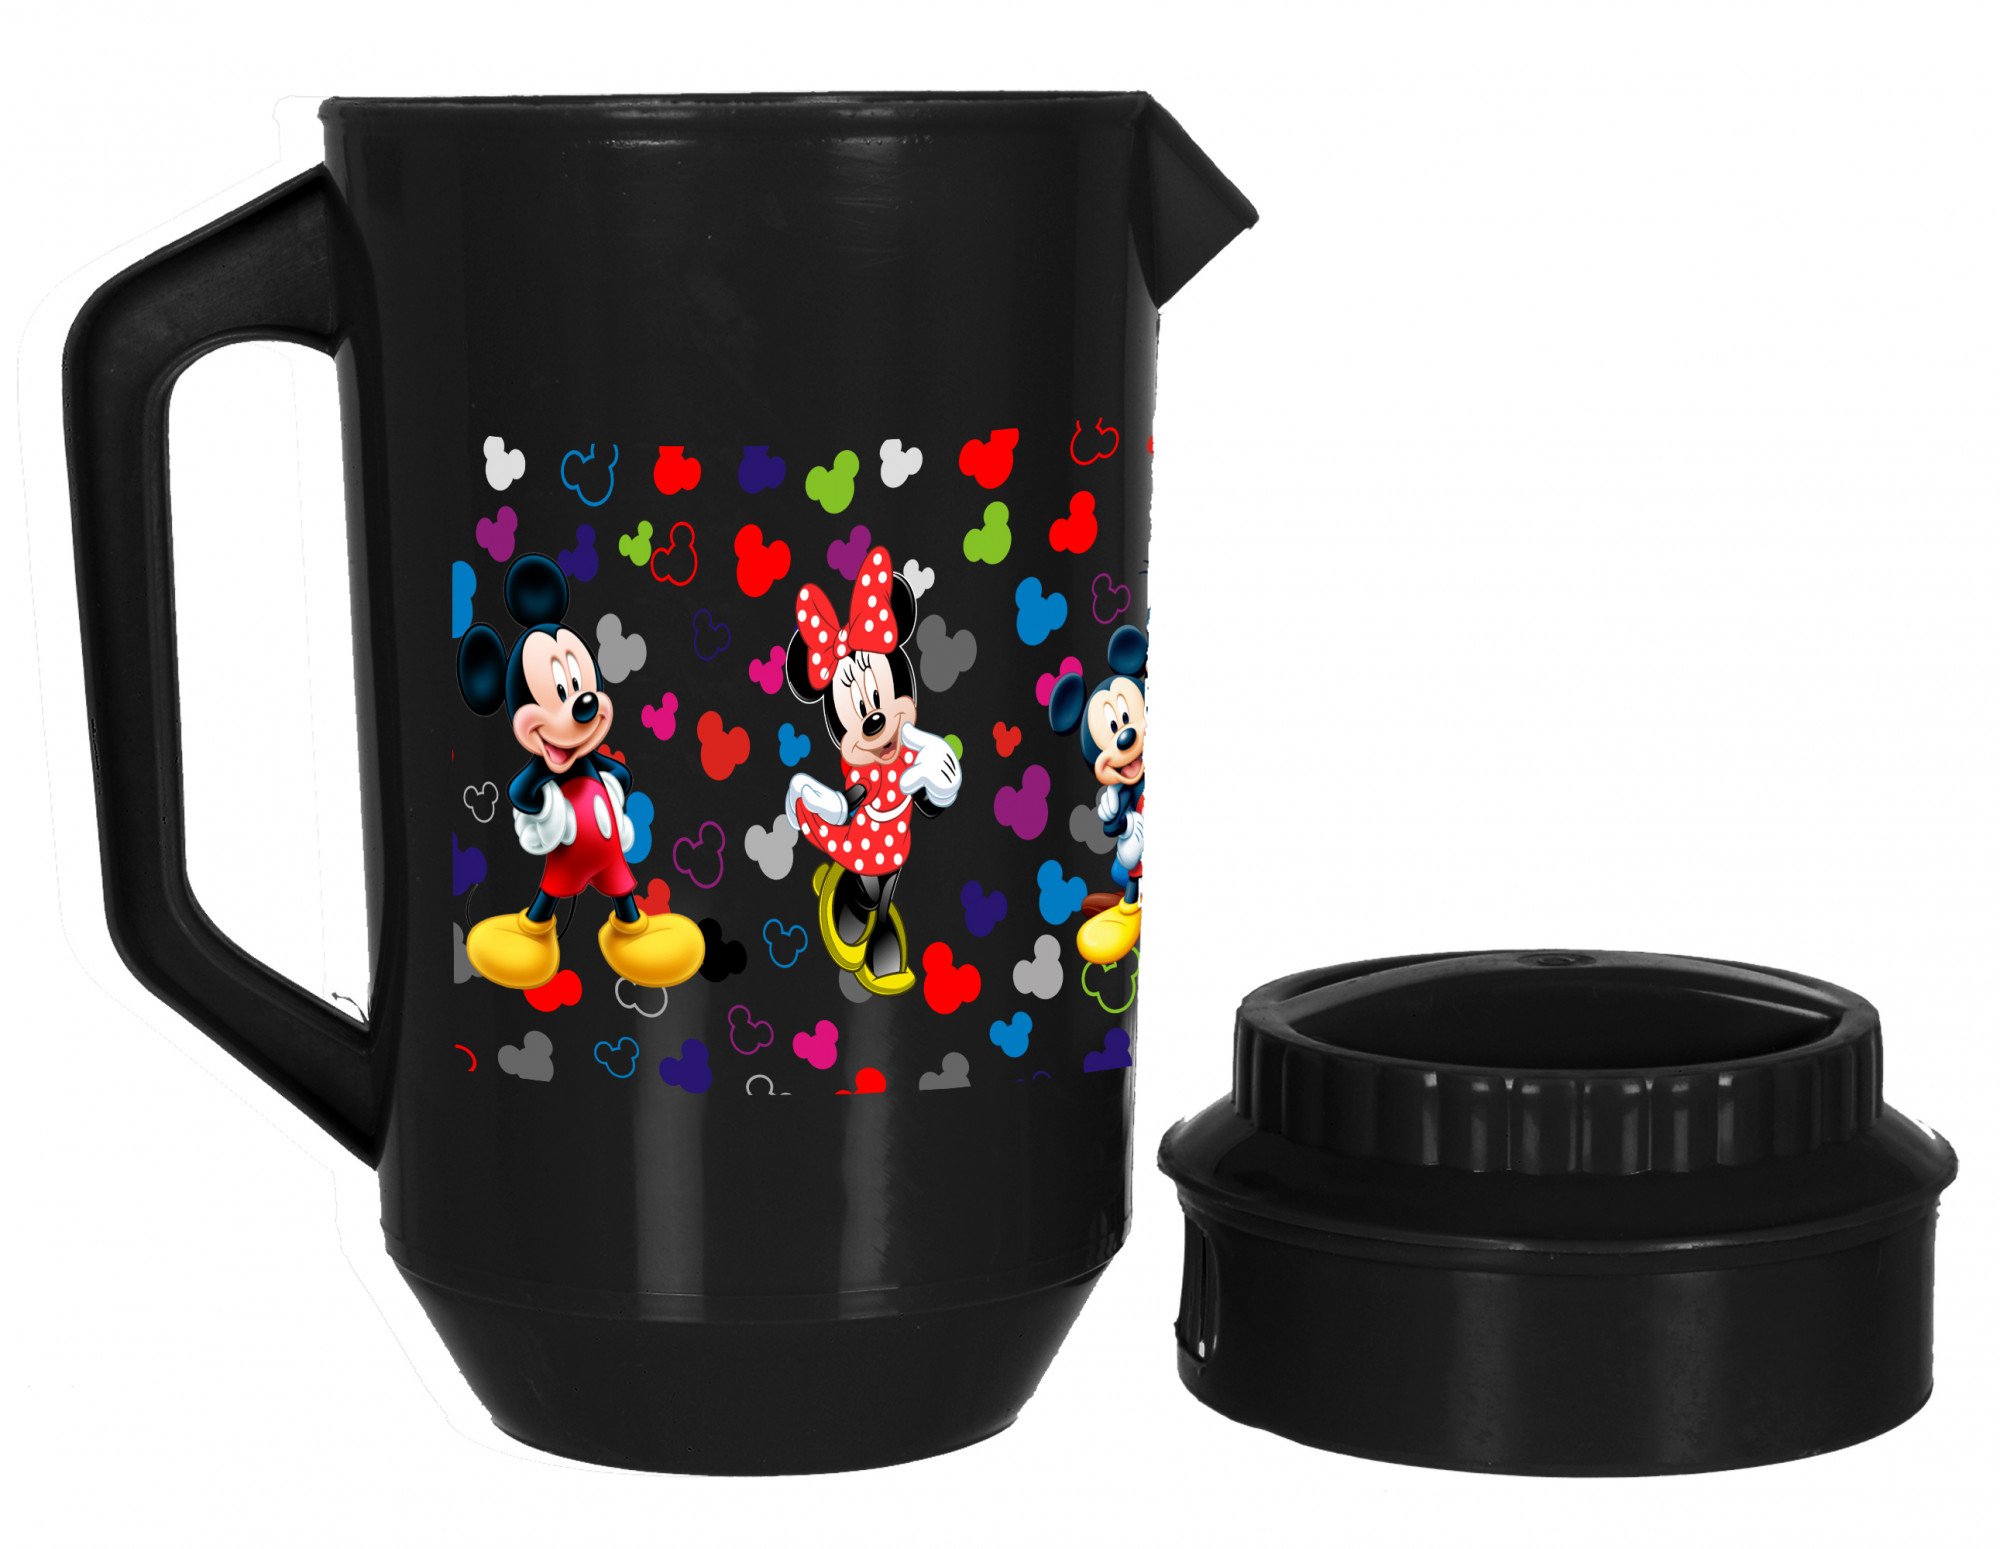 Kuber Industries Disney Team Mickey Print Unbreakable Multipurpose Plastic Water & Juice Jug With Lid,2 Ltr (Set of 3,Cream & Blue & Black)